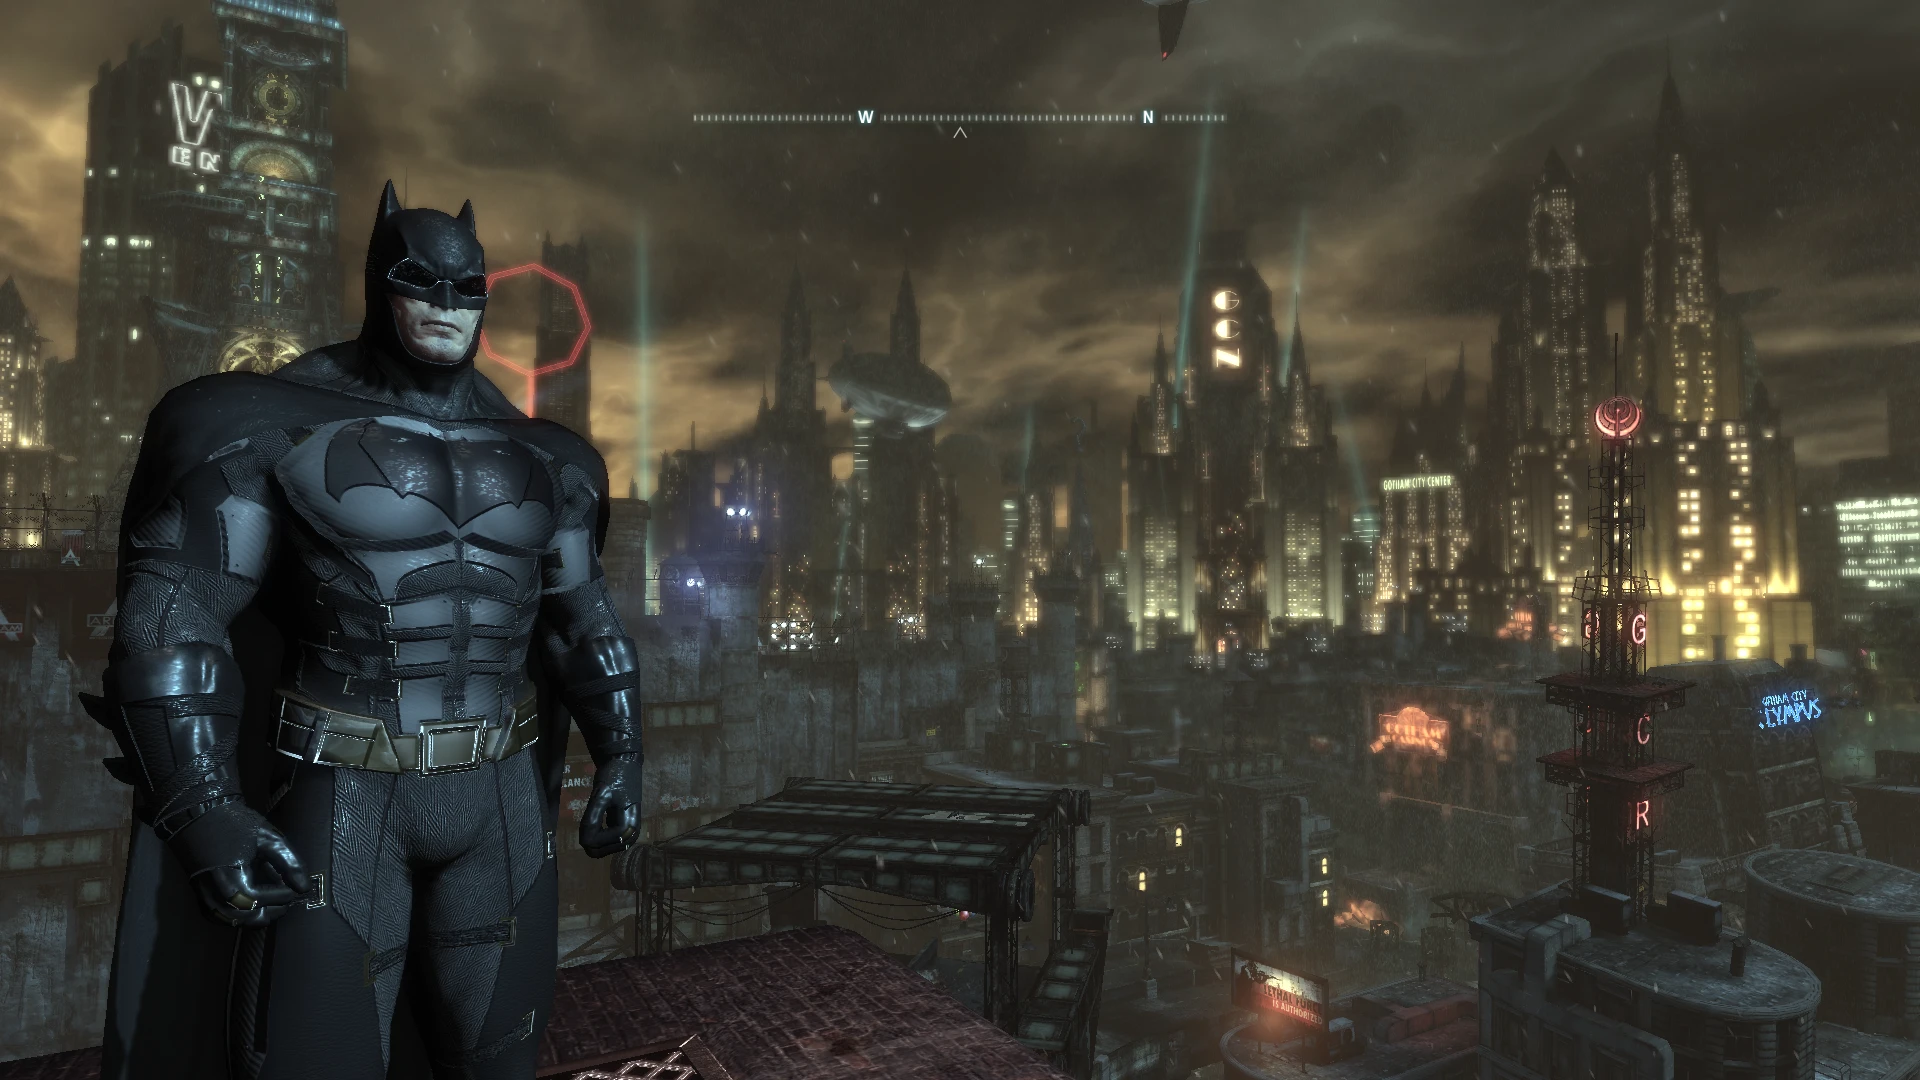 Бэтмен Аркхем кнайт. Batfleck Arkham Knight Suit Mod. Бэтмен: нулевой год. Бэтмен на английском языке